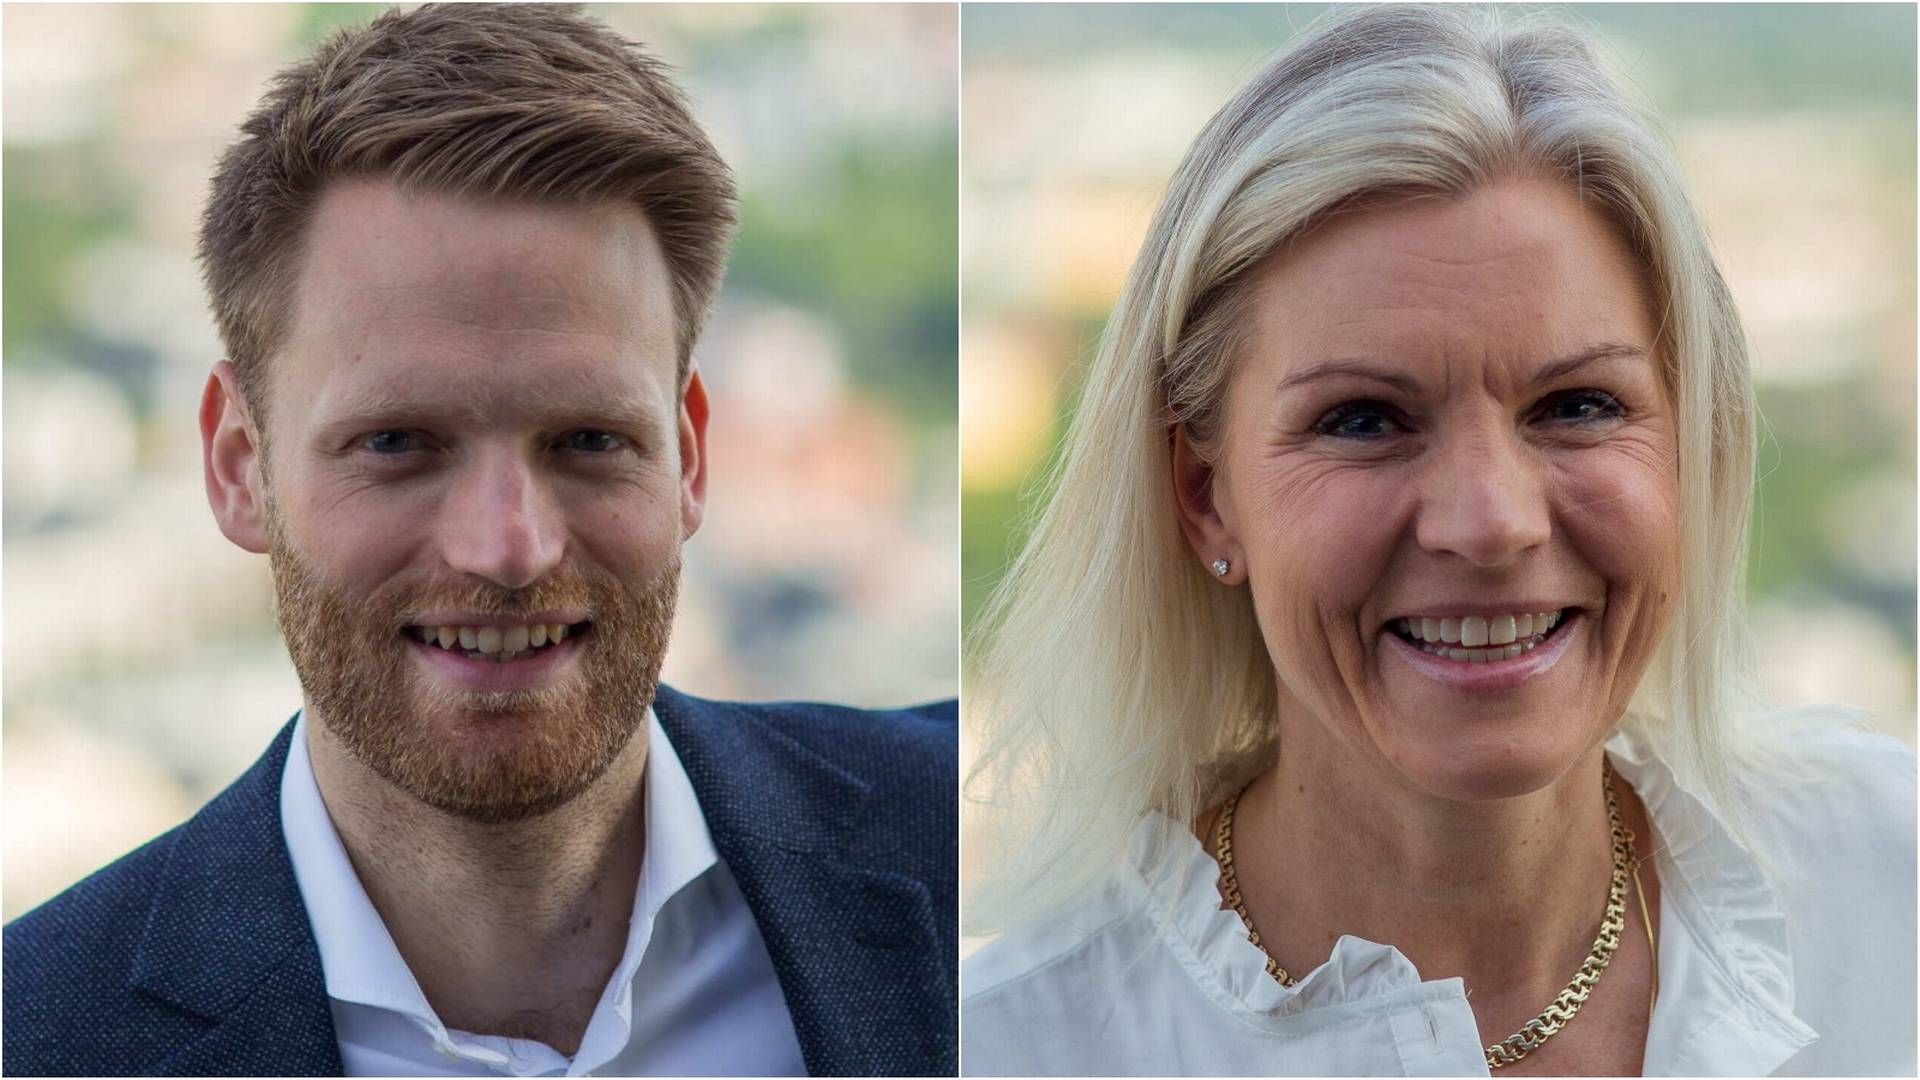 BLIR RÅDGIVERE:Thomas Kalvenes og Eline Gedde-Dahl inngår i Entras strategiske rådgiver-team | Foto: Entra